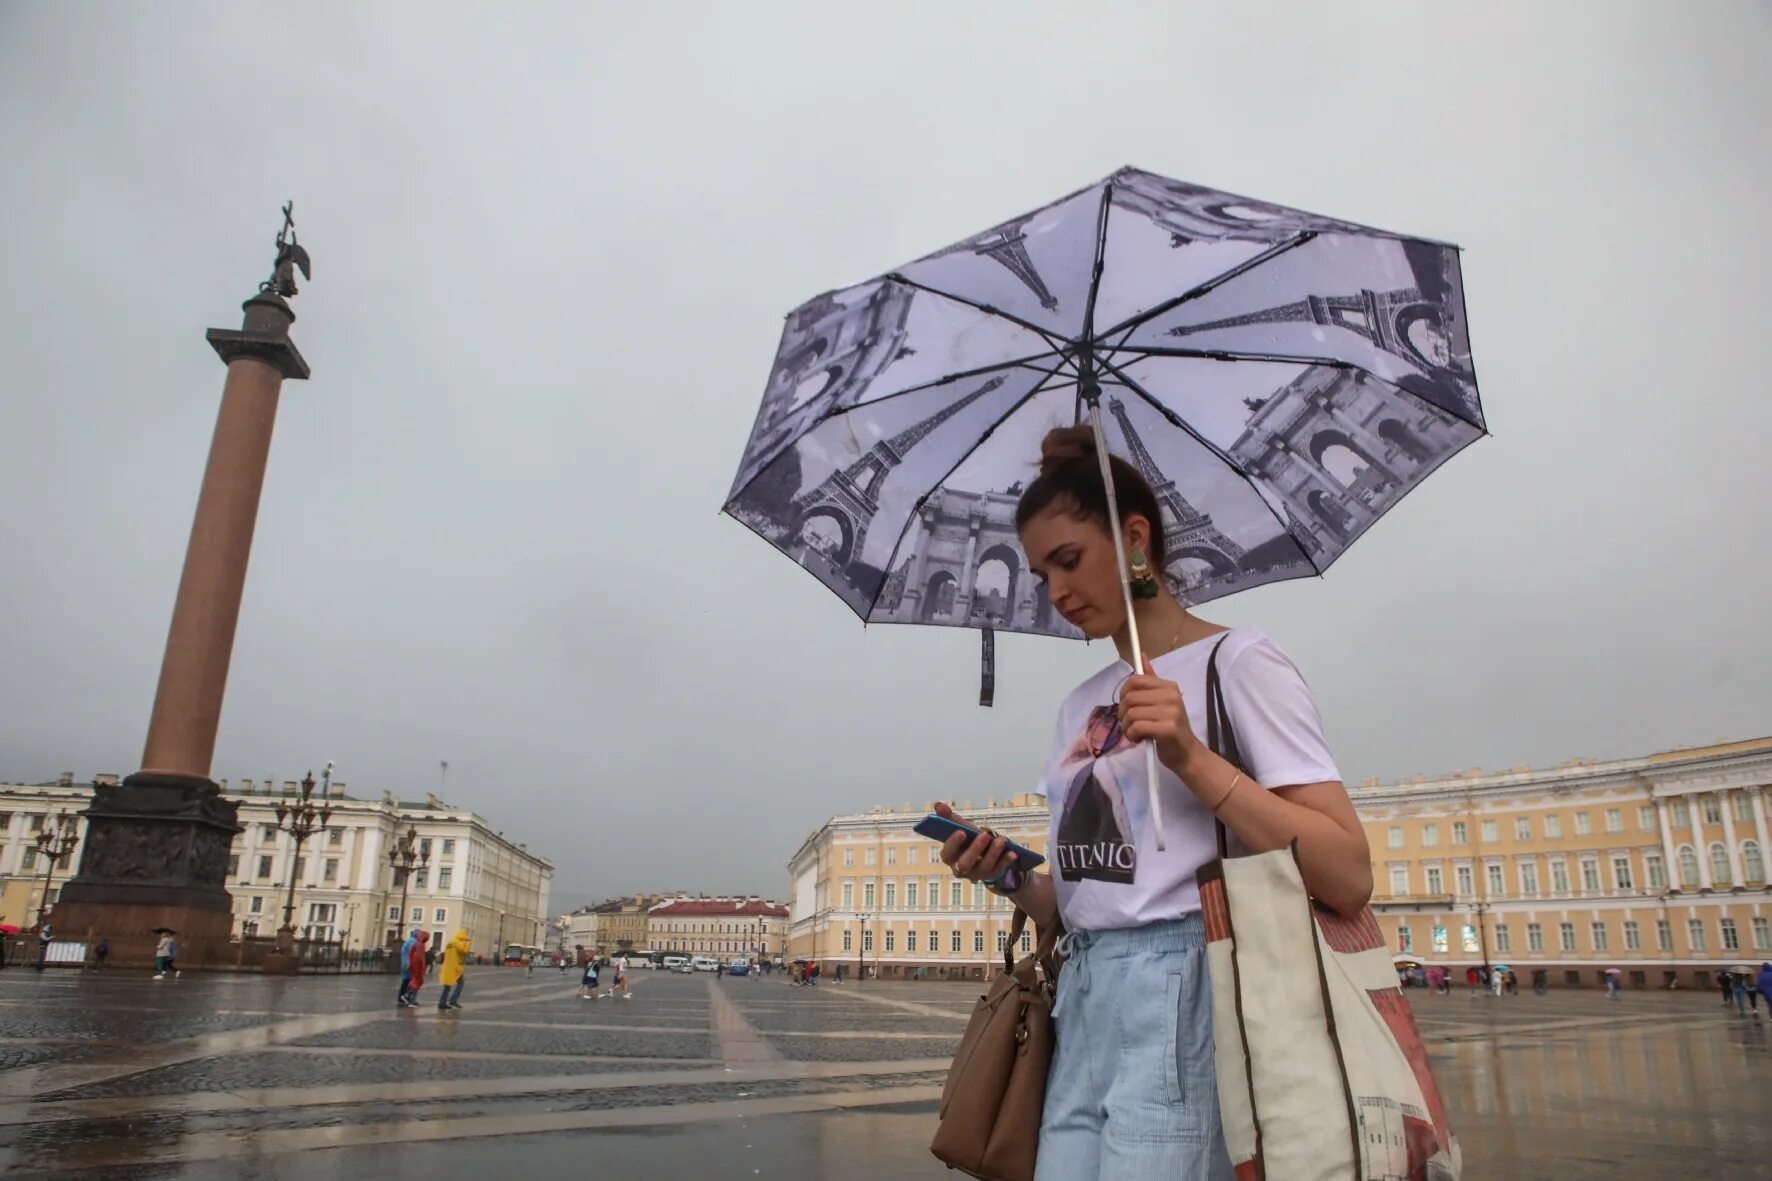 Воздух где идет в спб. Летний дождь в Питере. Ветер Питер лето. Санкт-Петербург в дождливую погоду. Фотосессия Питер с зонтом.